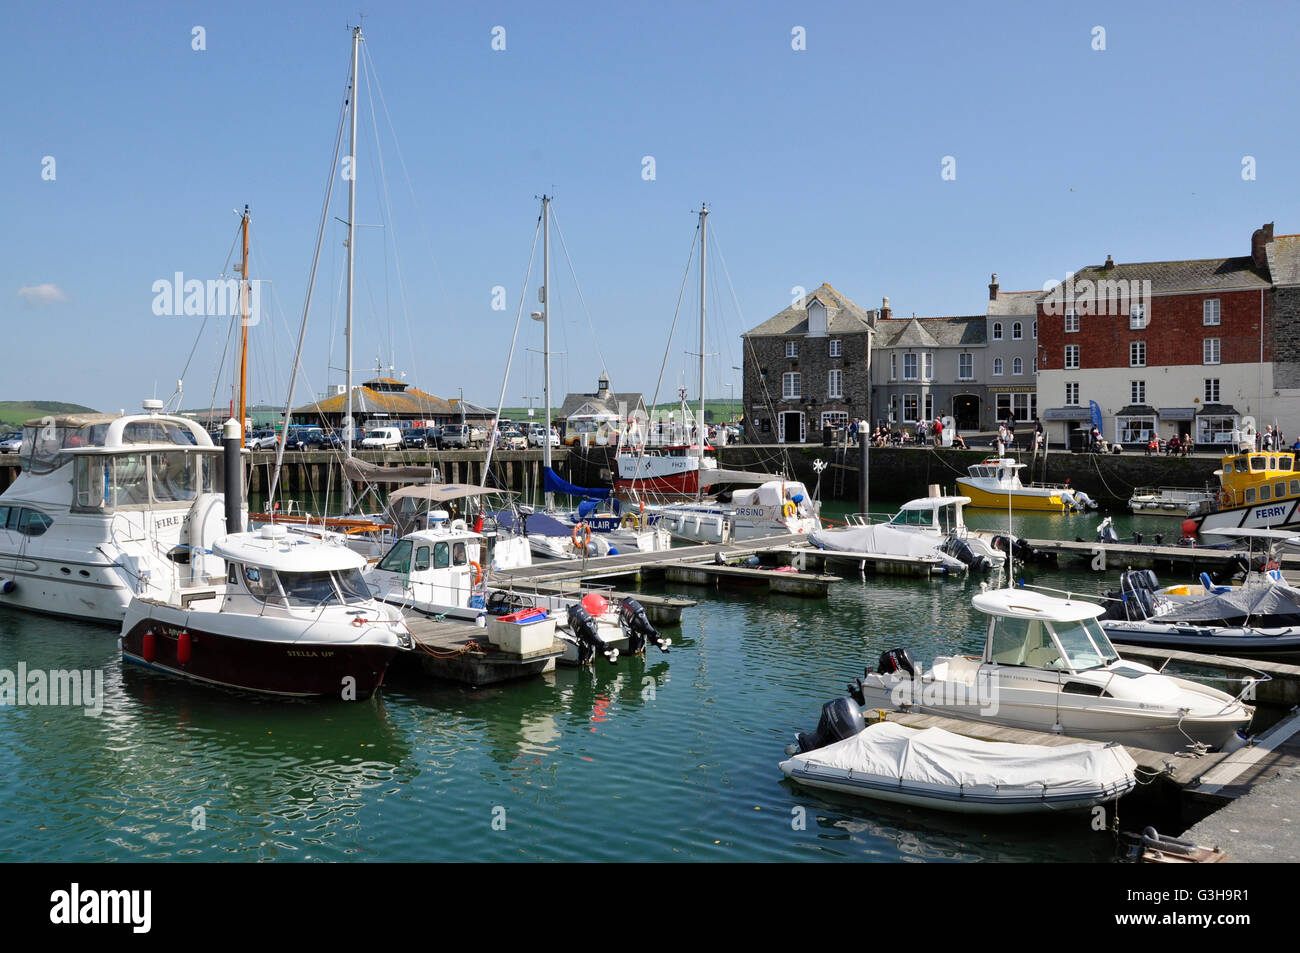 Padstow harbour - imbarcazioni da diporto a ancoraggio - edifici del periodo linea il quay - la luminosa luce del sole cielo blu - riflessioni Foto Stock